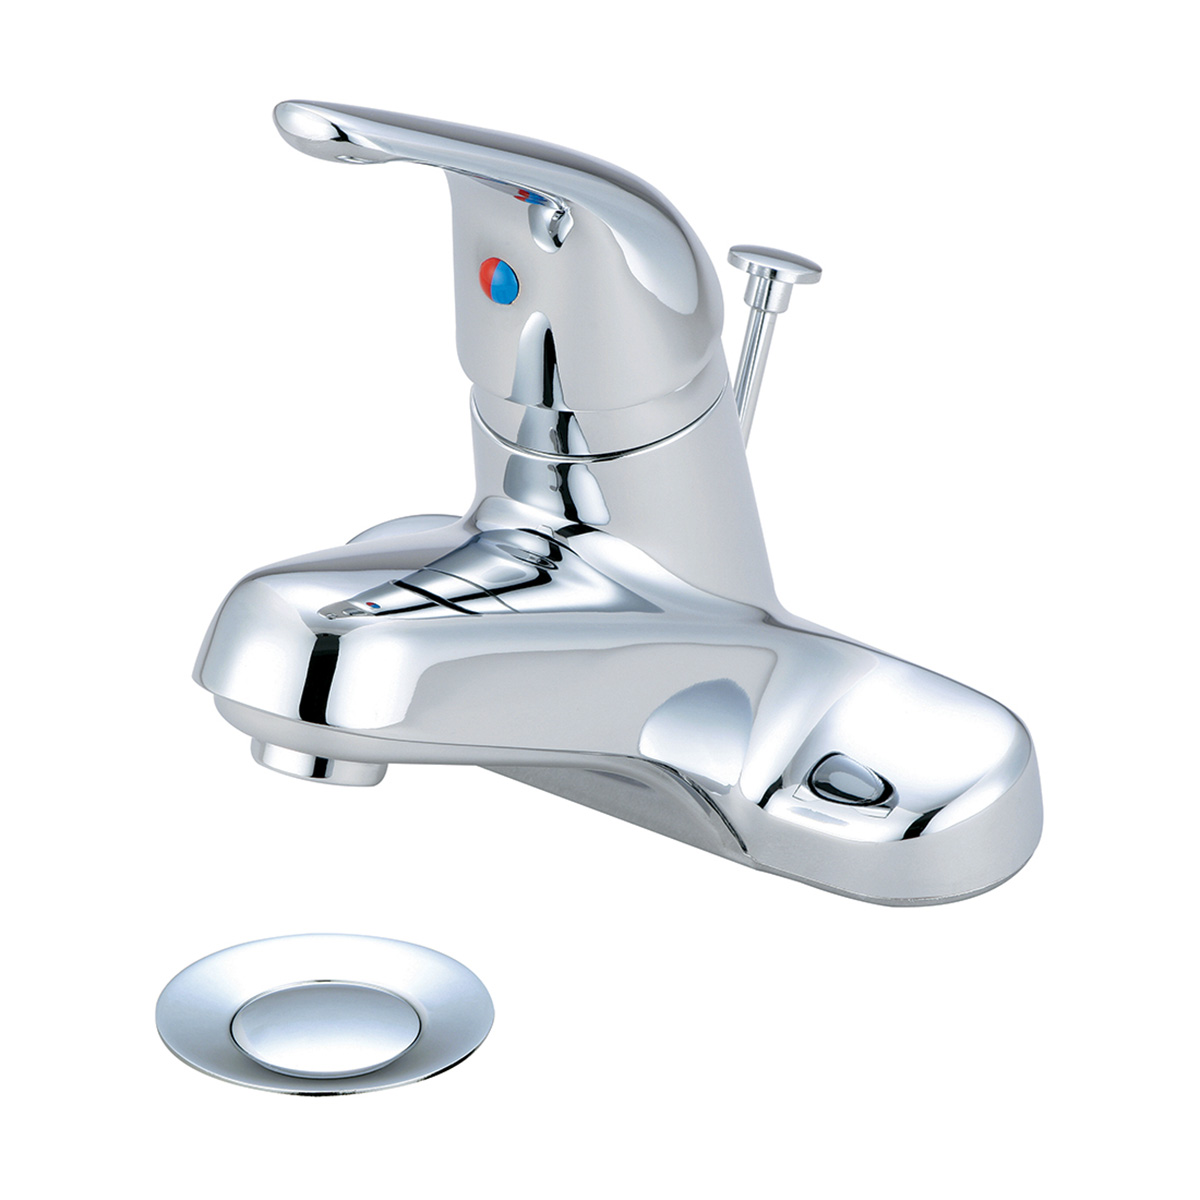 L-6160h Single Handle Lavatory Faucet - Chrome